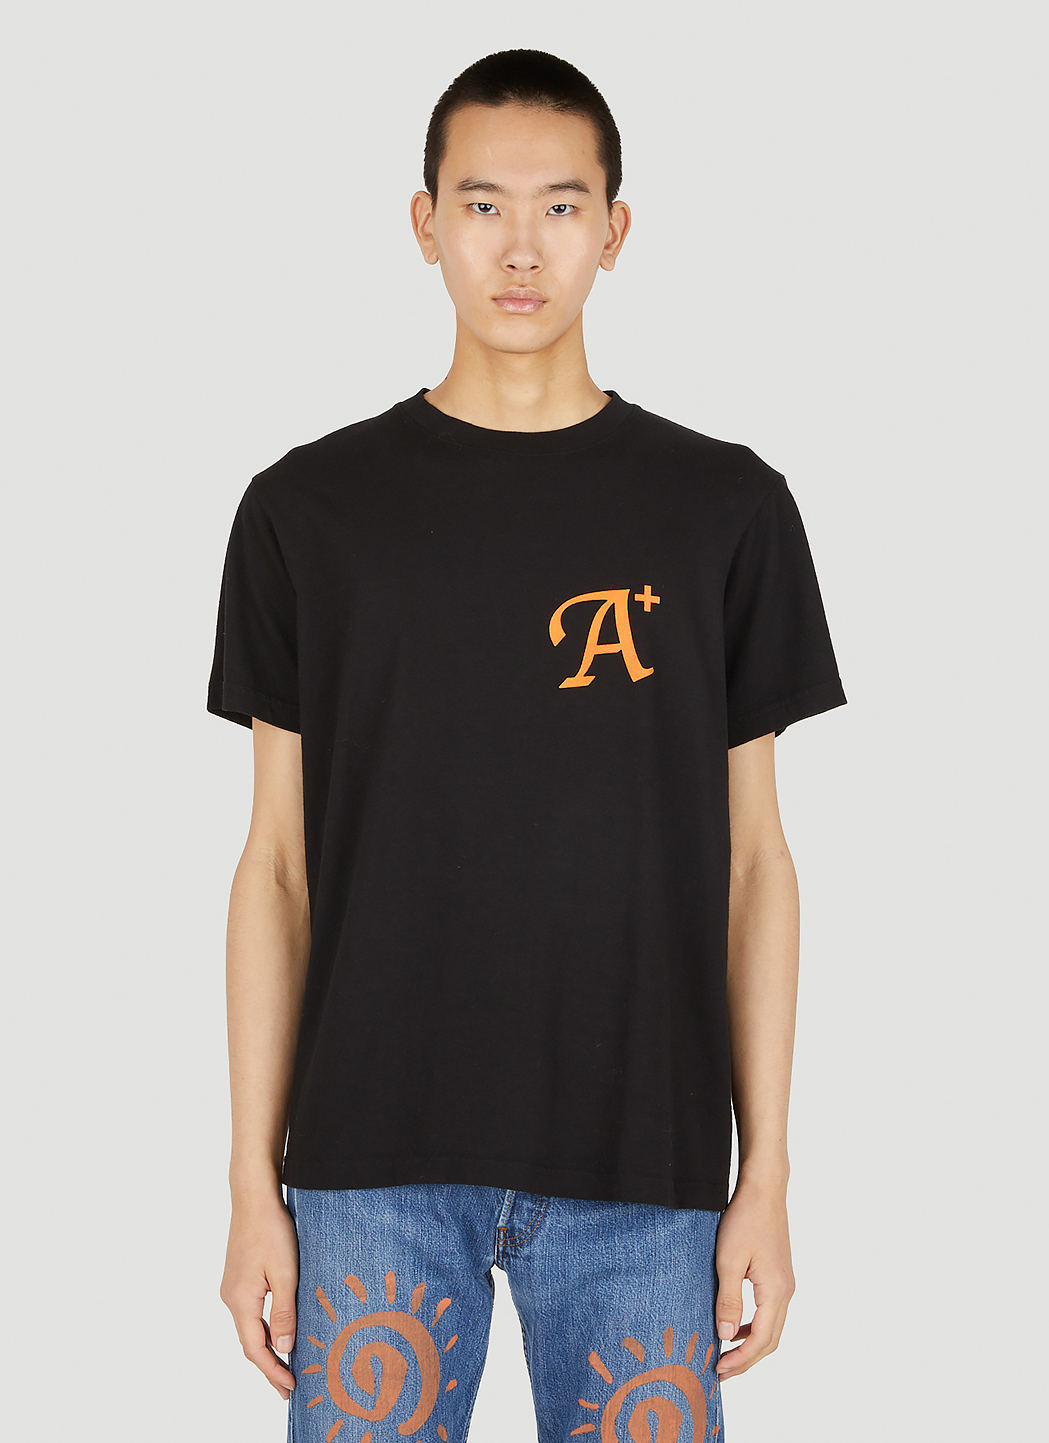 A+ Logo T-Shirt